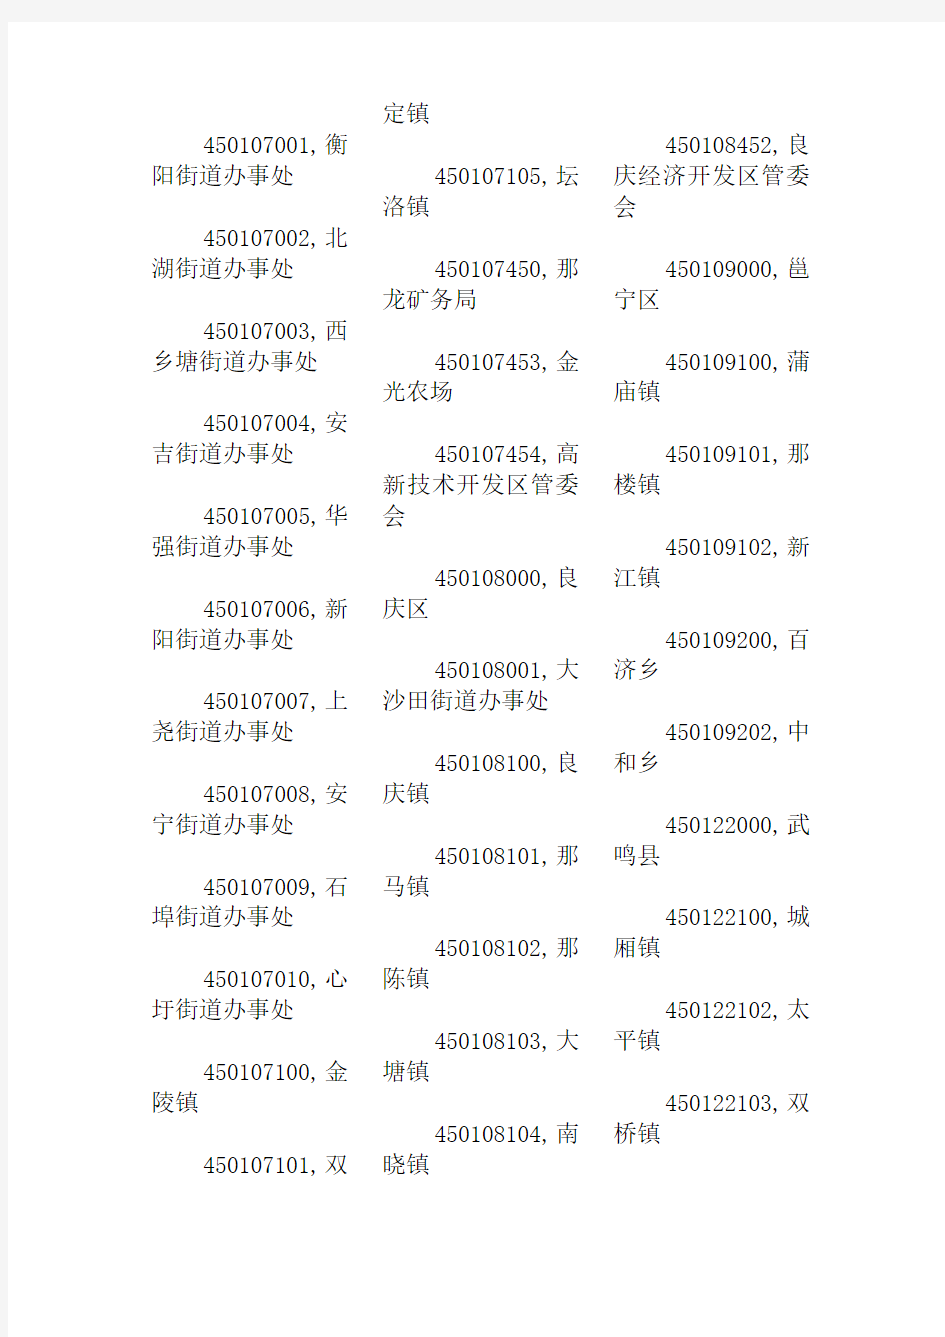 2012年广西壮族自治区行政区划代码